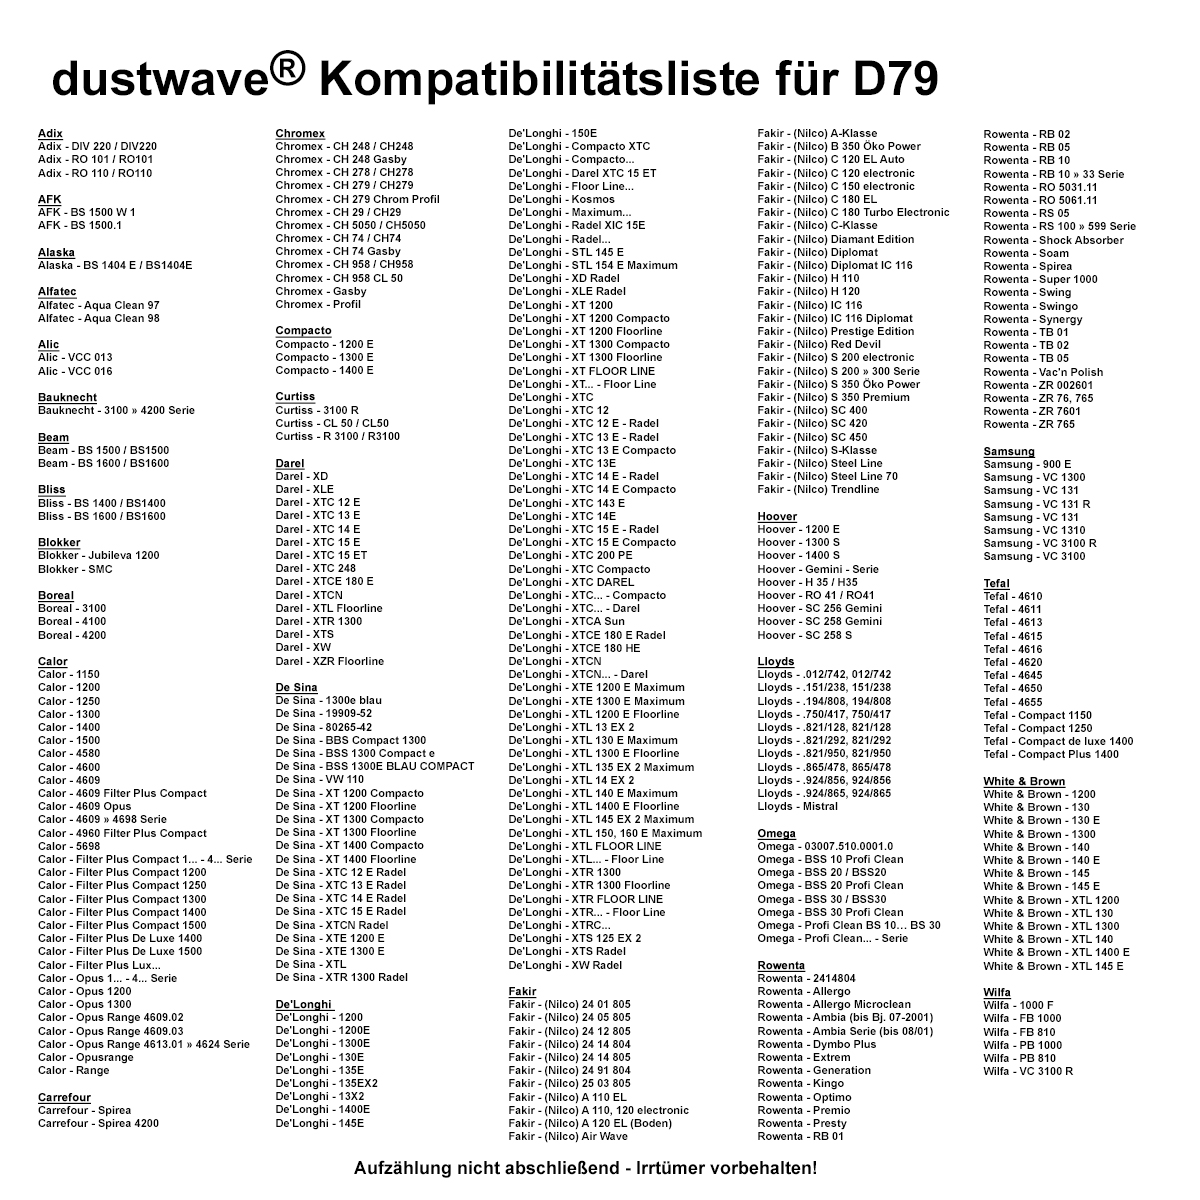 Dustwave® 20 Staubsaugerbeutel für Hoover PP C1417001 - hocheffizient, mehrlagiges Mikrovlies mit Hygieneverschluss - Made in Germany